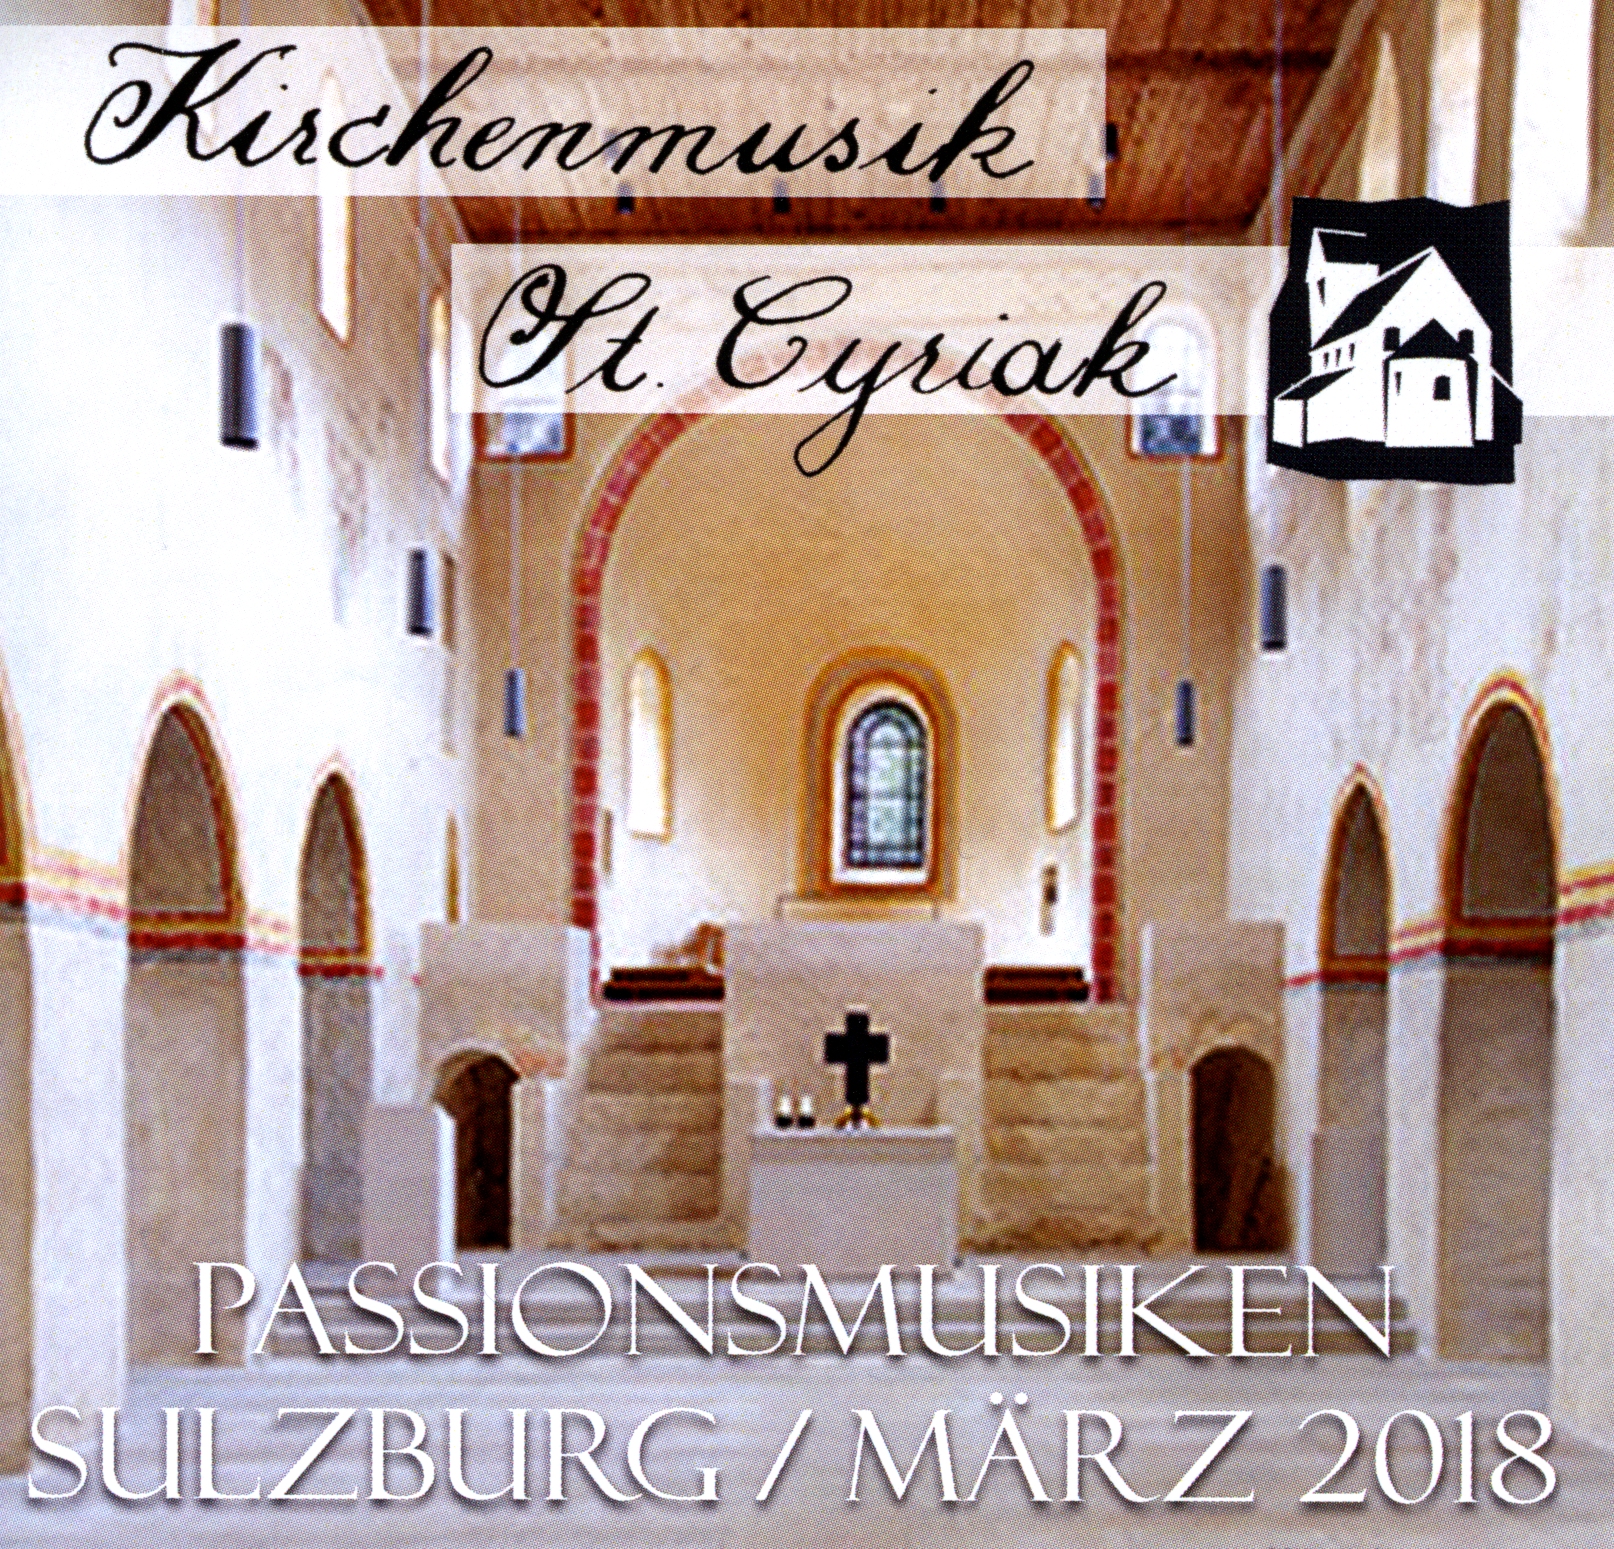 Kirchenmusik Sulzburg St. Cyriak März 2018